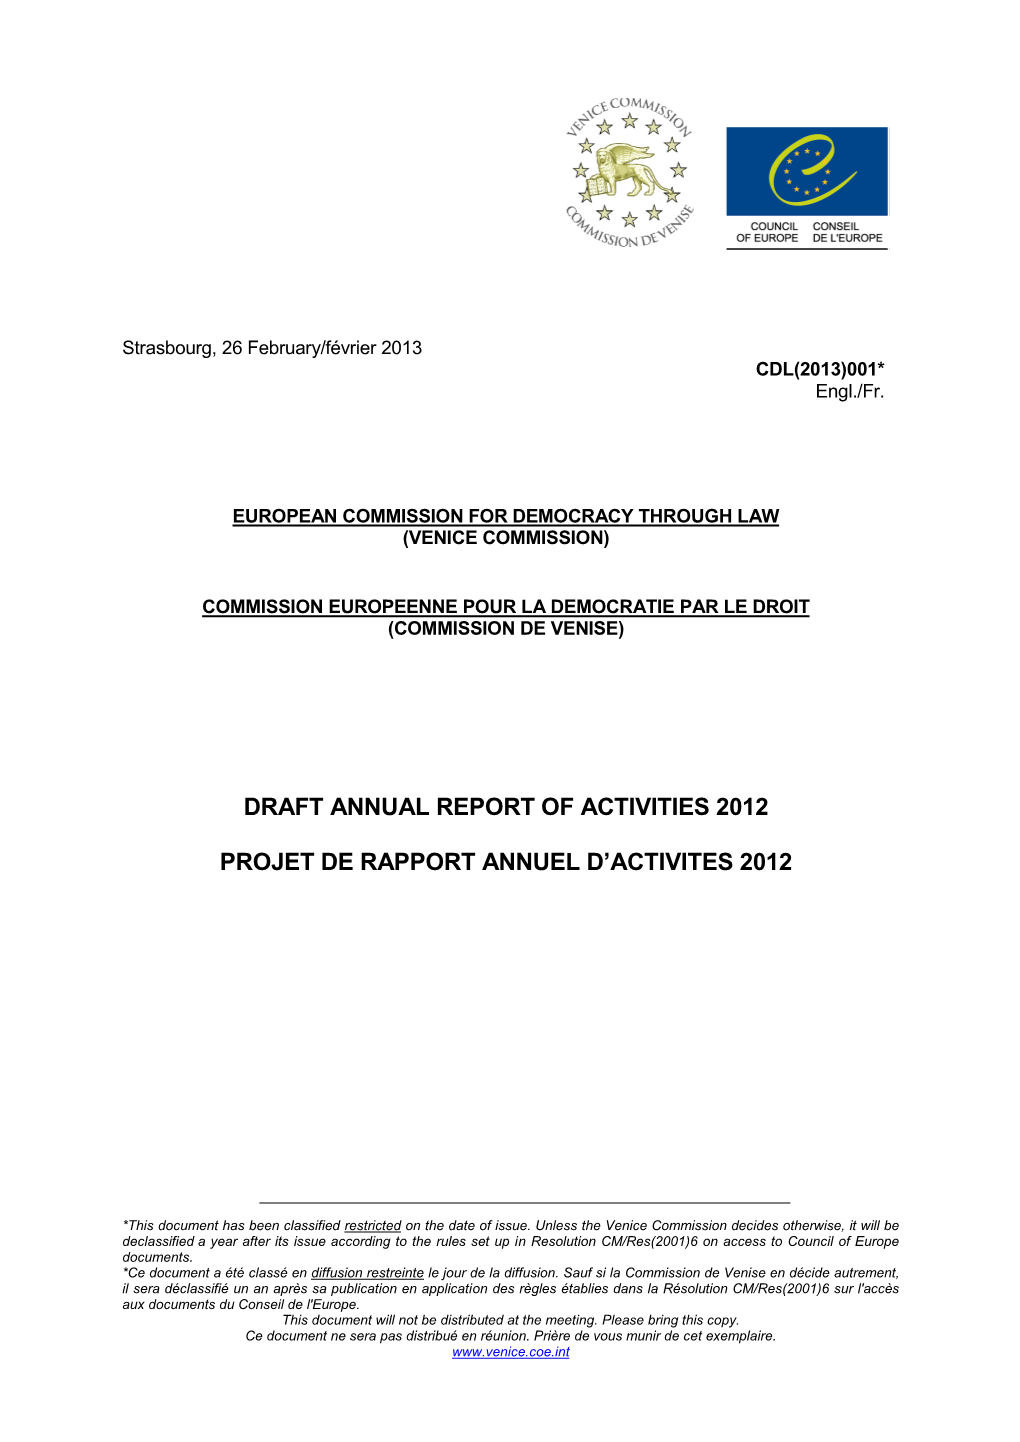 Draft Annual Report of Activities 2012 Projet De